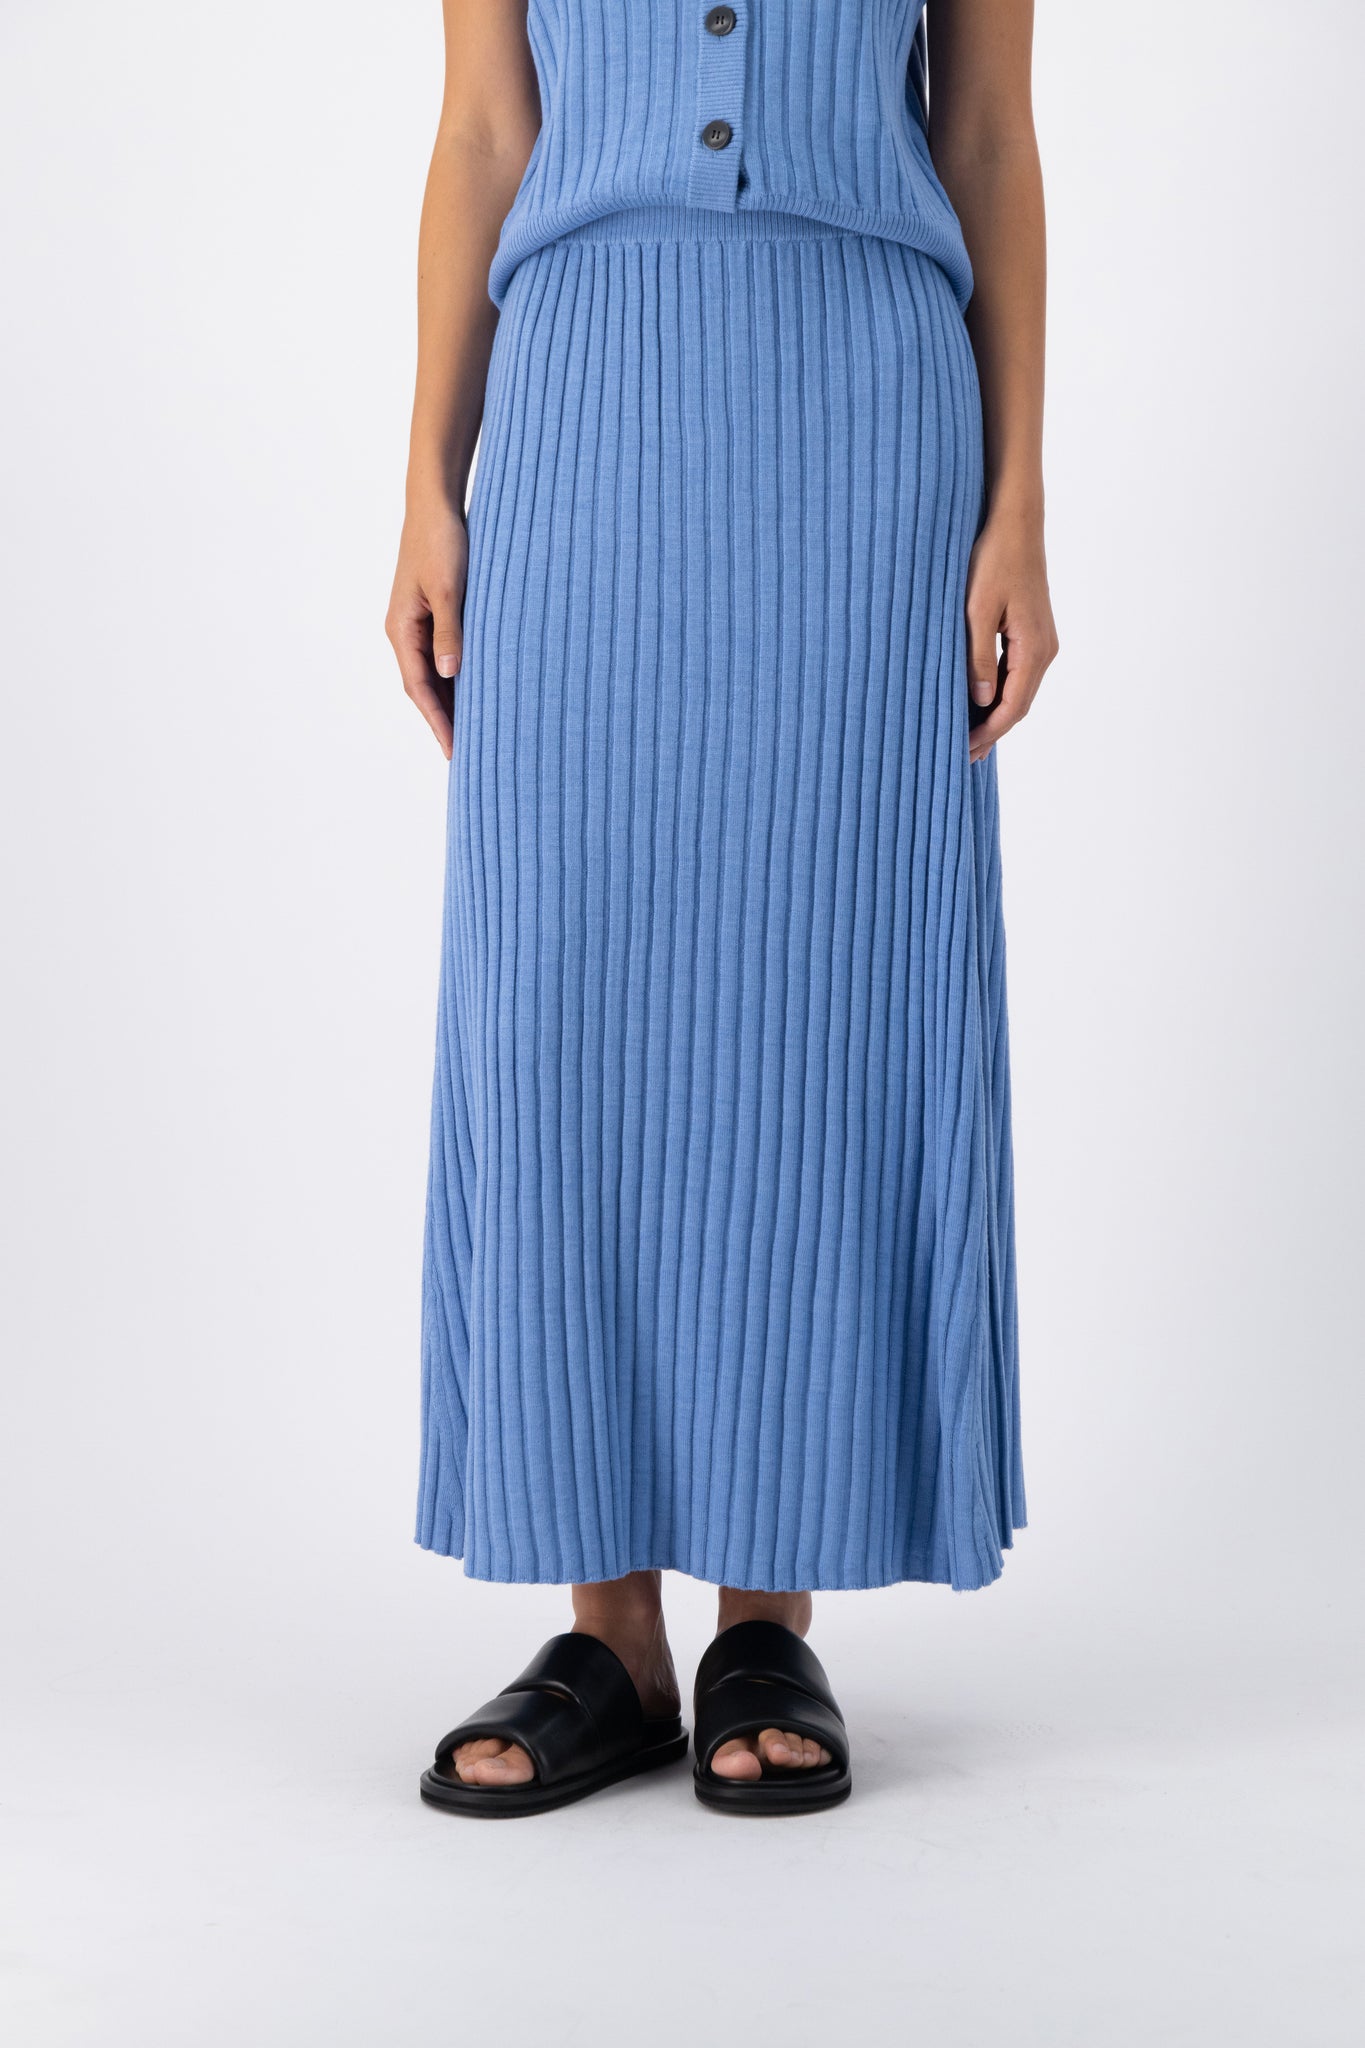 Pippa Wool Rib Skirt